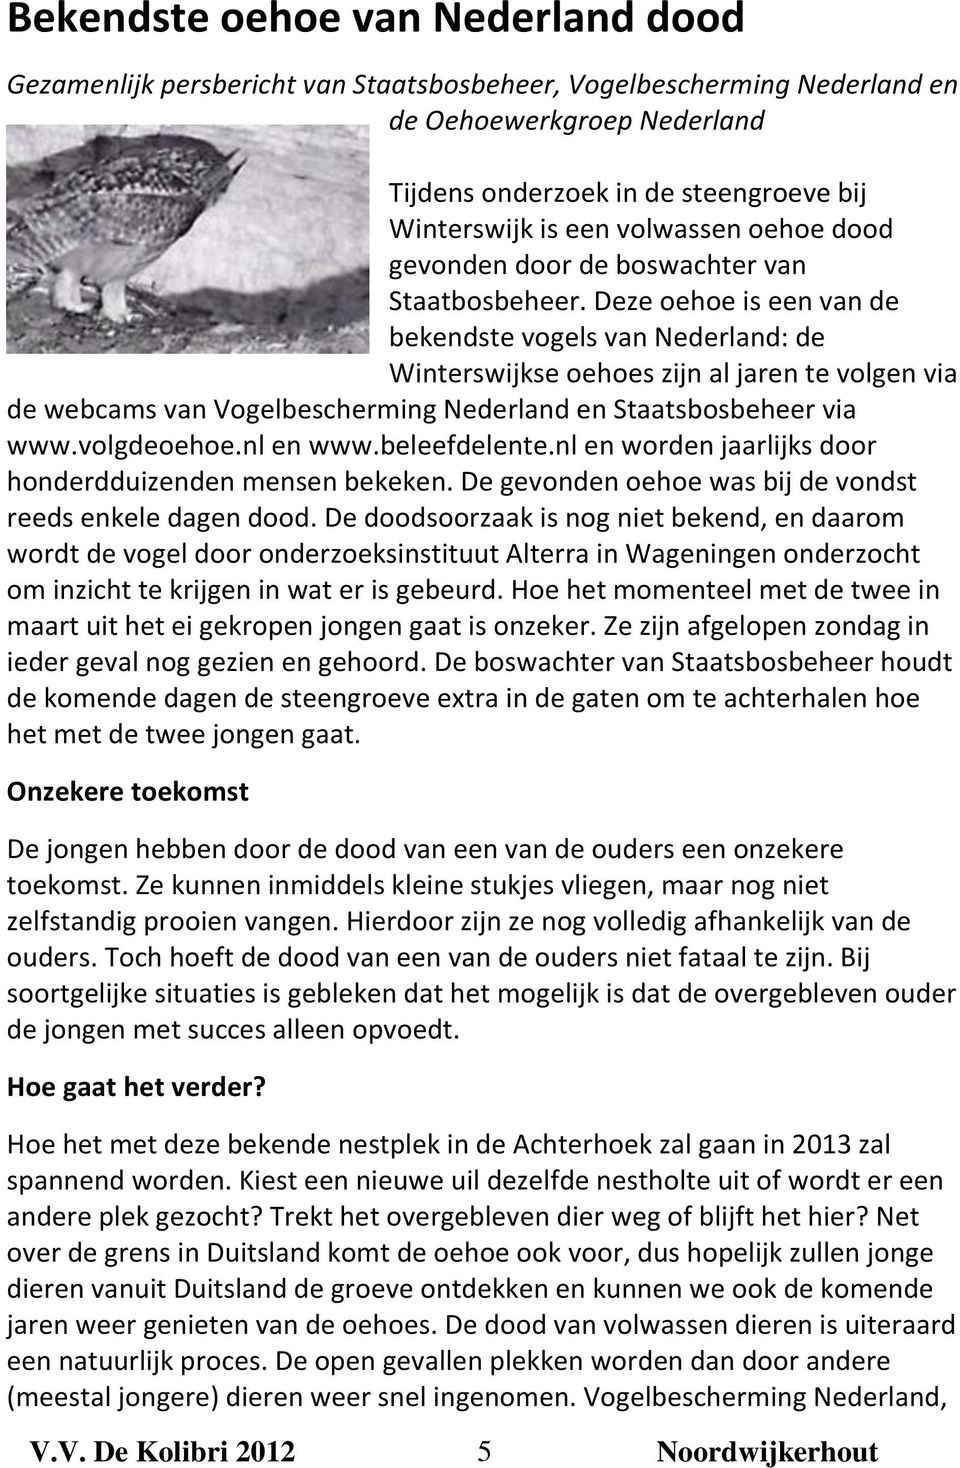 Deze oehoe is een van de bekendste vogels van Nederland: de Winterswijkse oehoes zijn al jaren te volgen via de webcams van Vogelbescherming Nederland en Staatsbosbeheer via www.volgdeoehoe.nl en www.